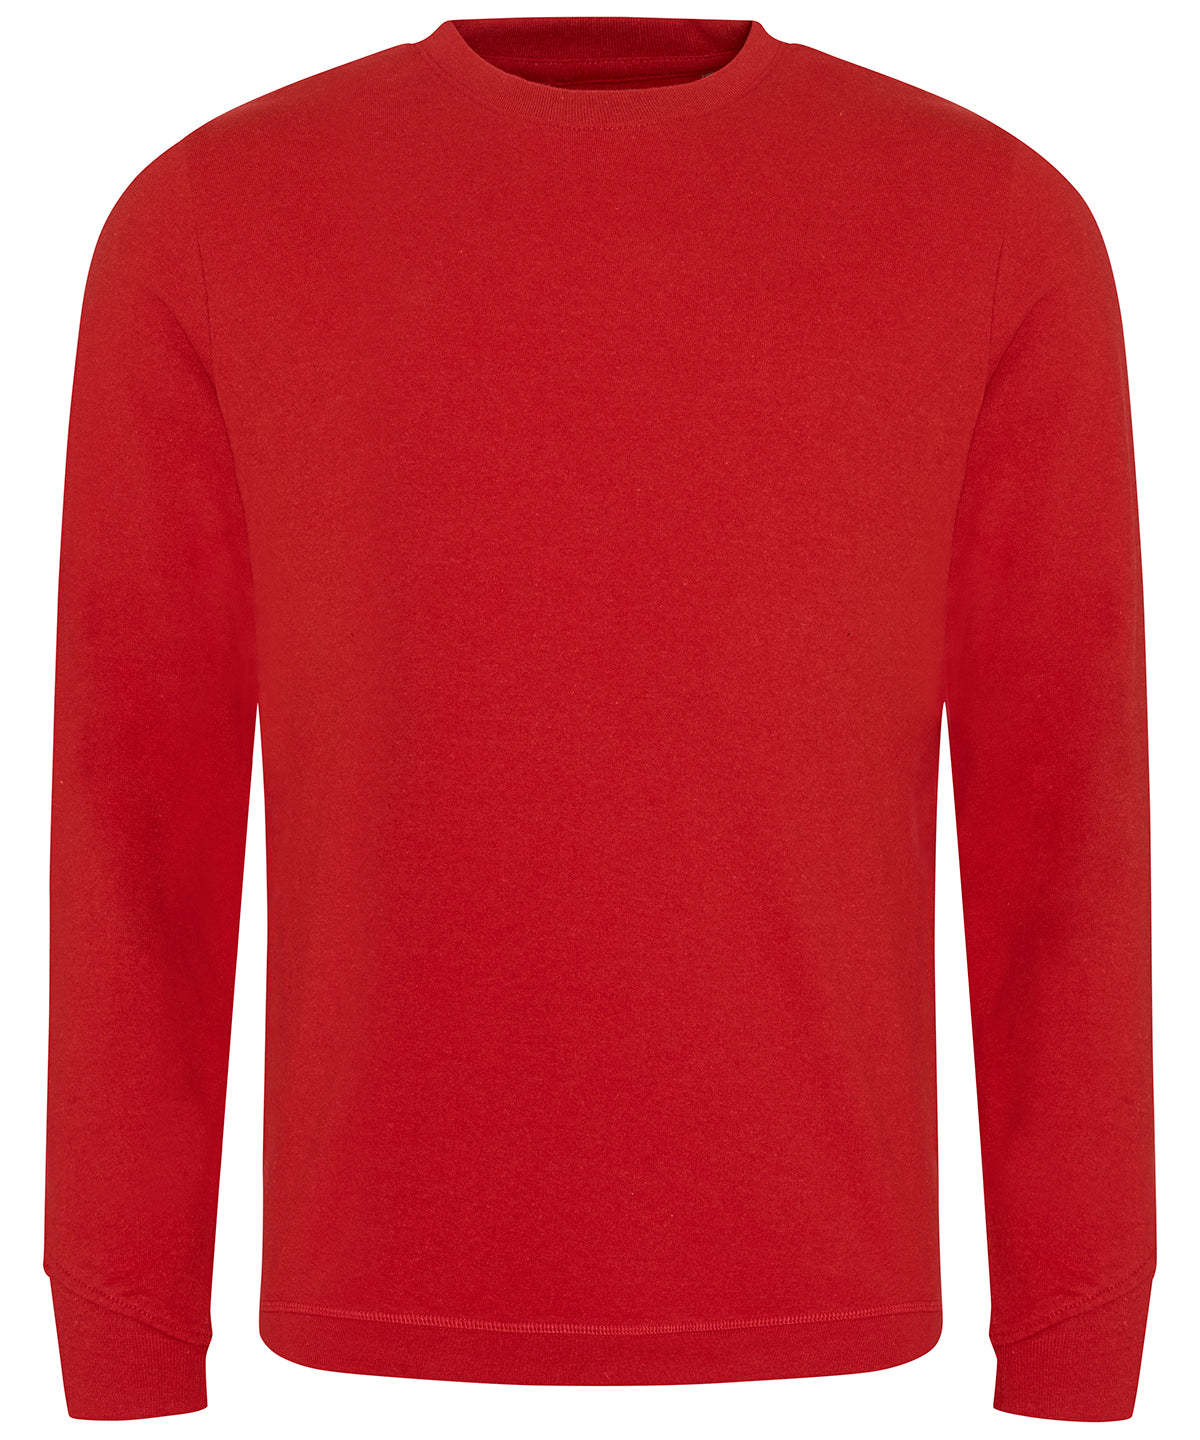 Banff regen sweatshirt | Red